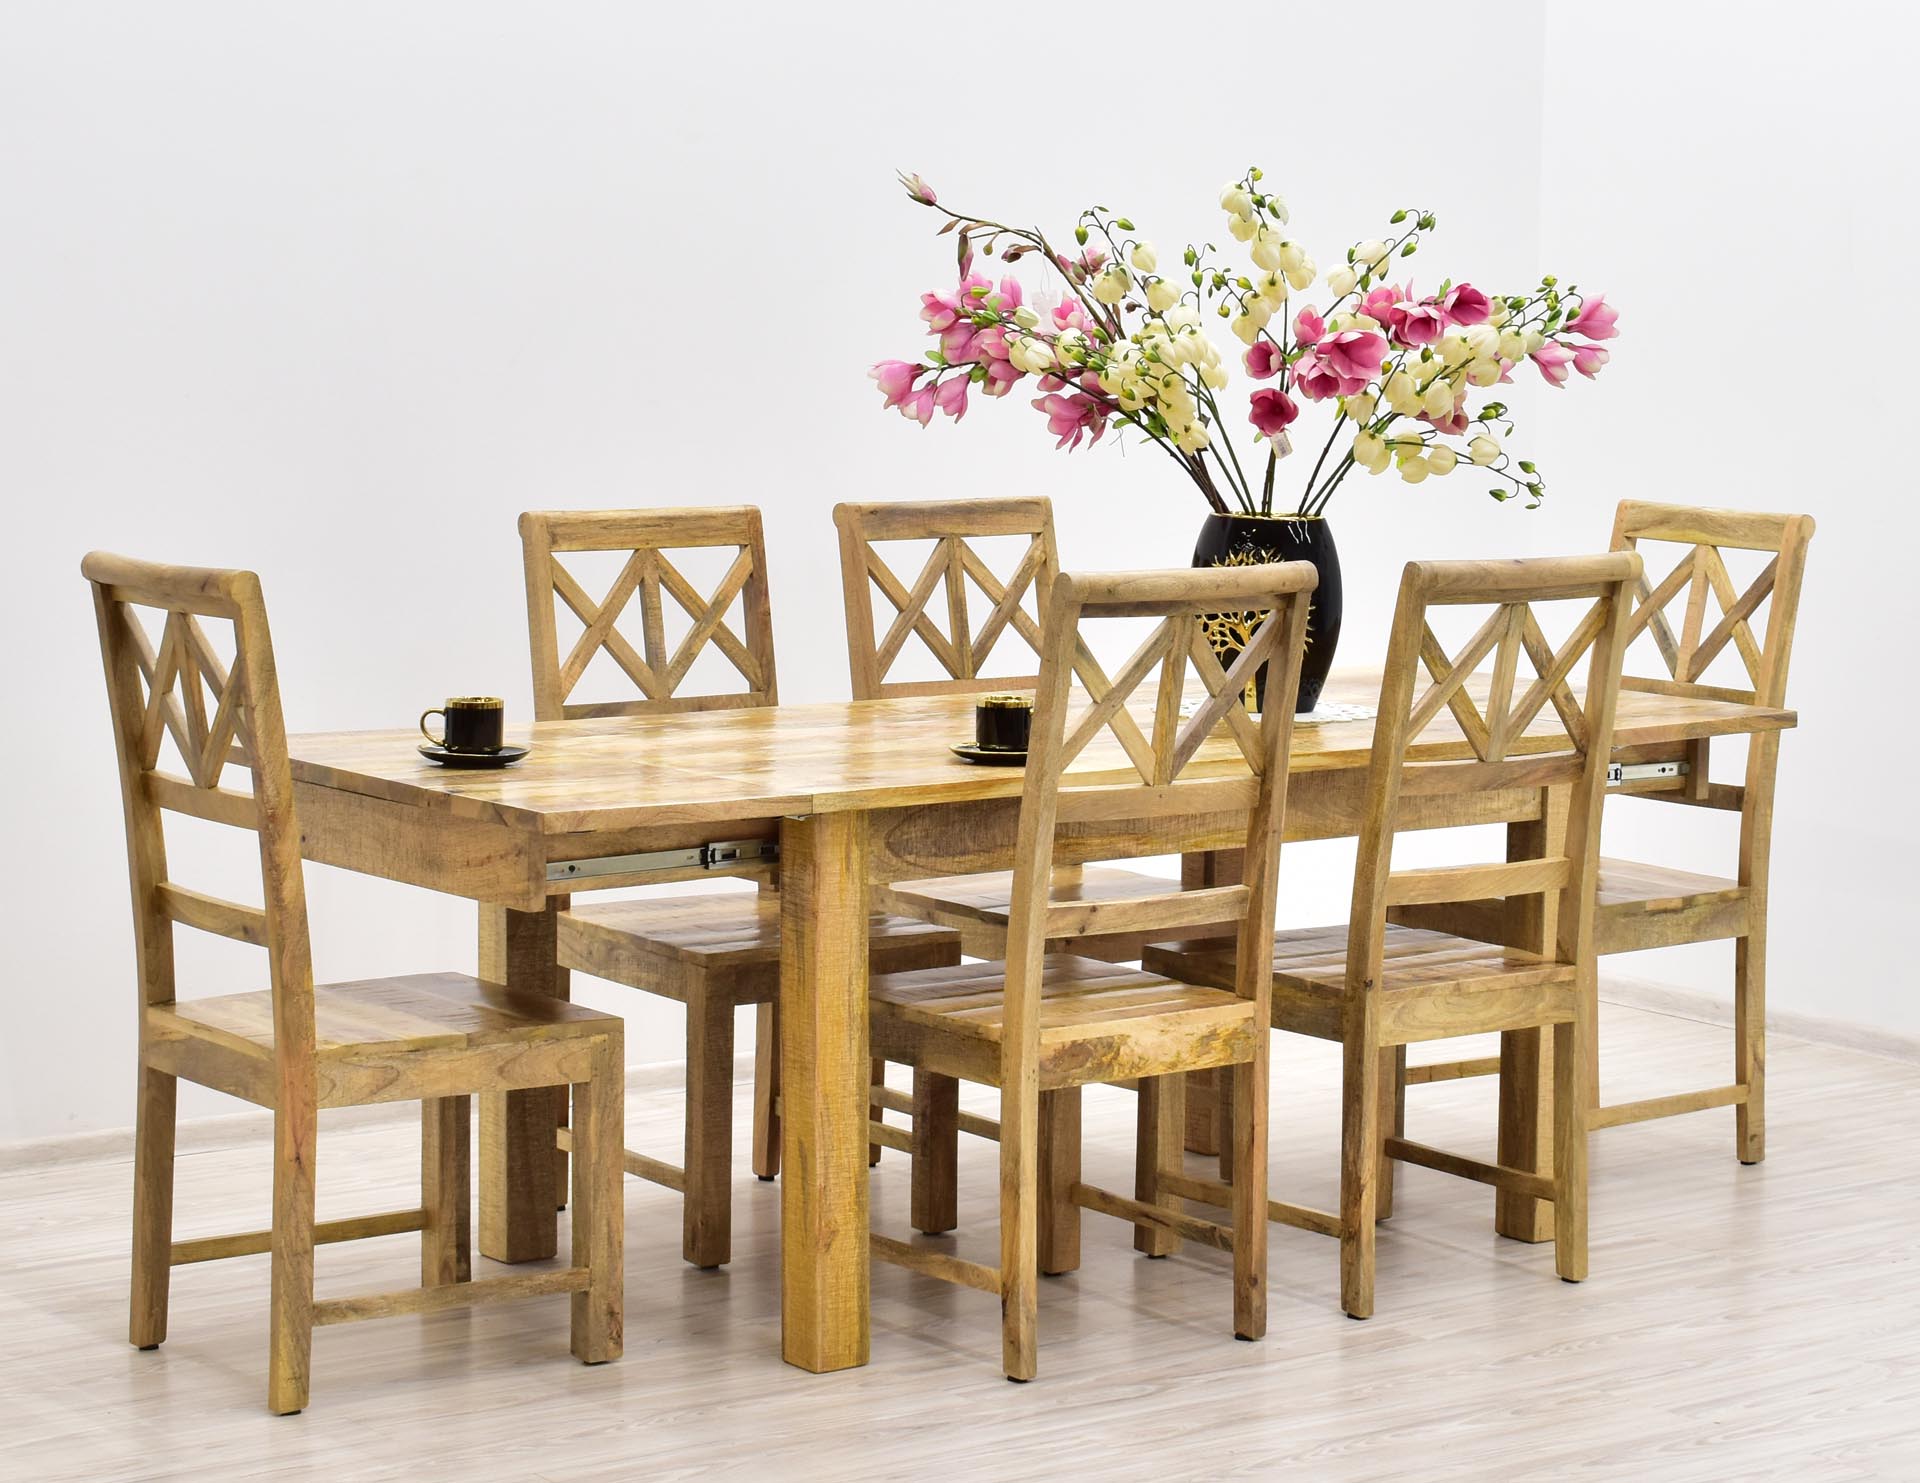 Kolonialny komplet obiadowy z litego drewna mango: rozkładany stół + 6 indyjskich krzeseł.